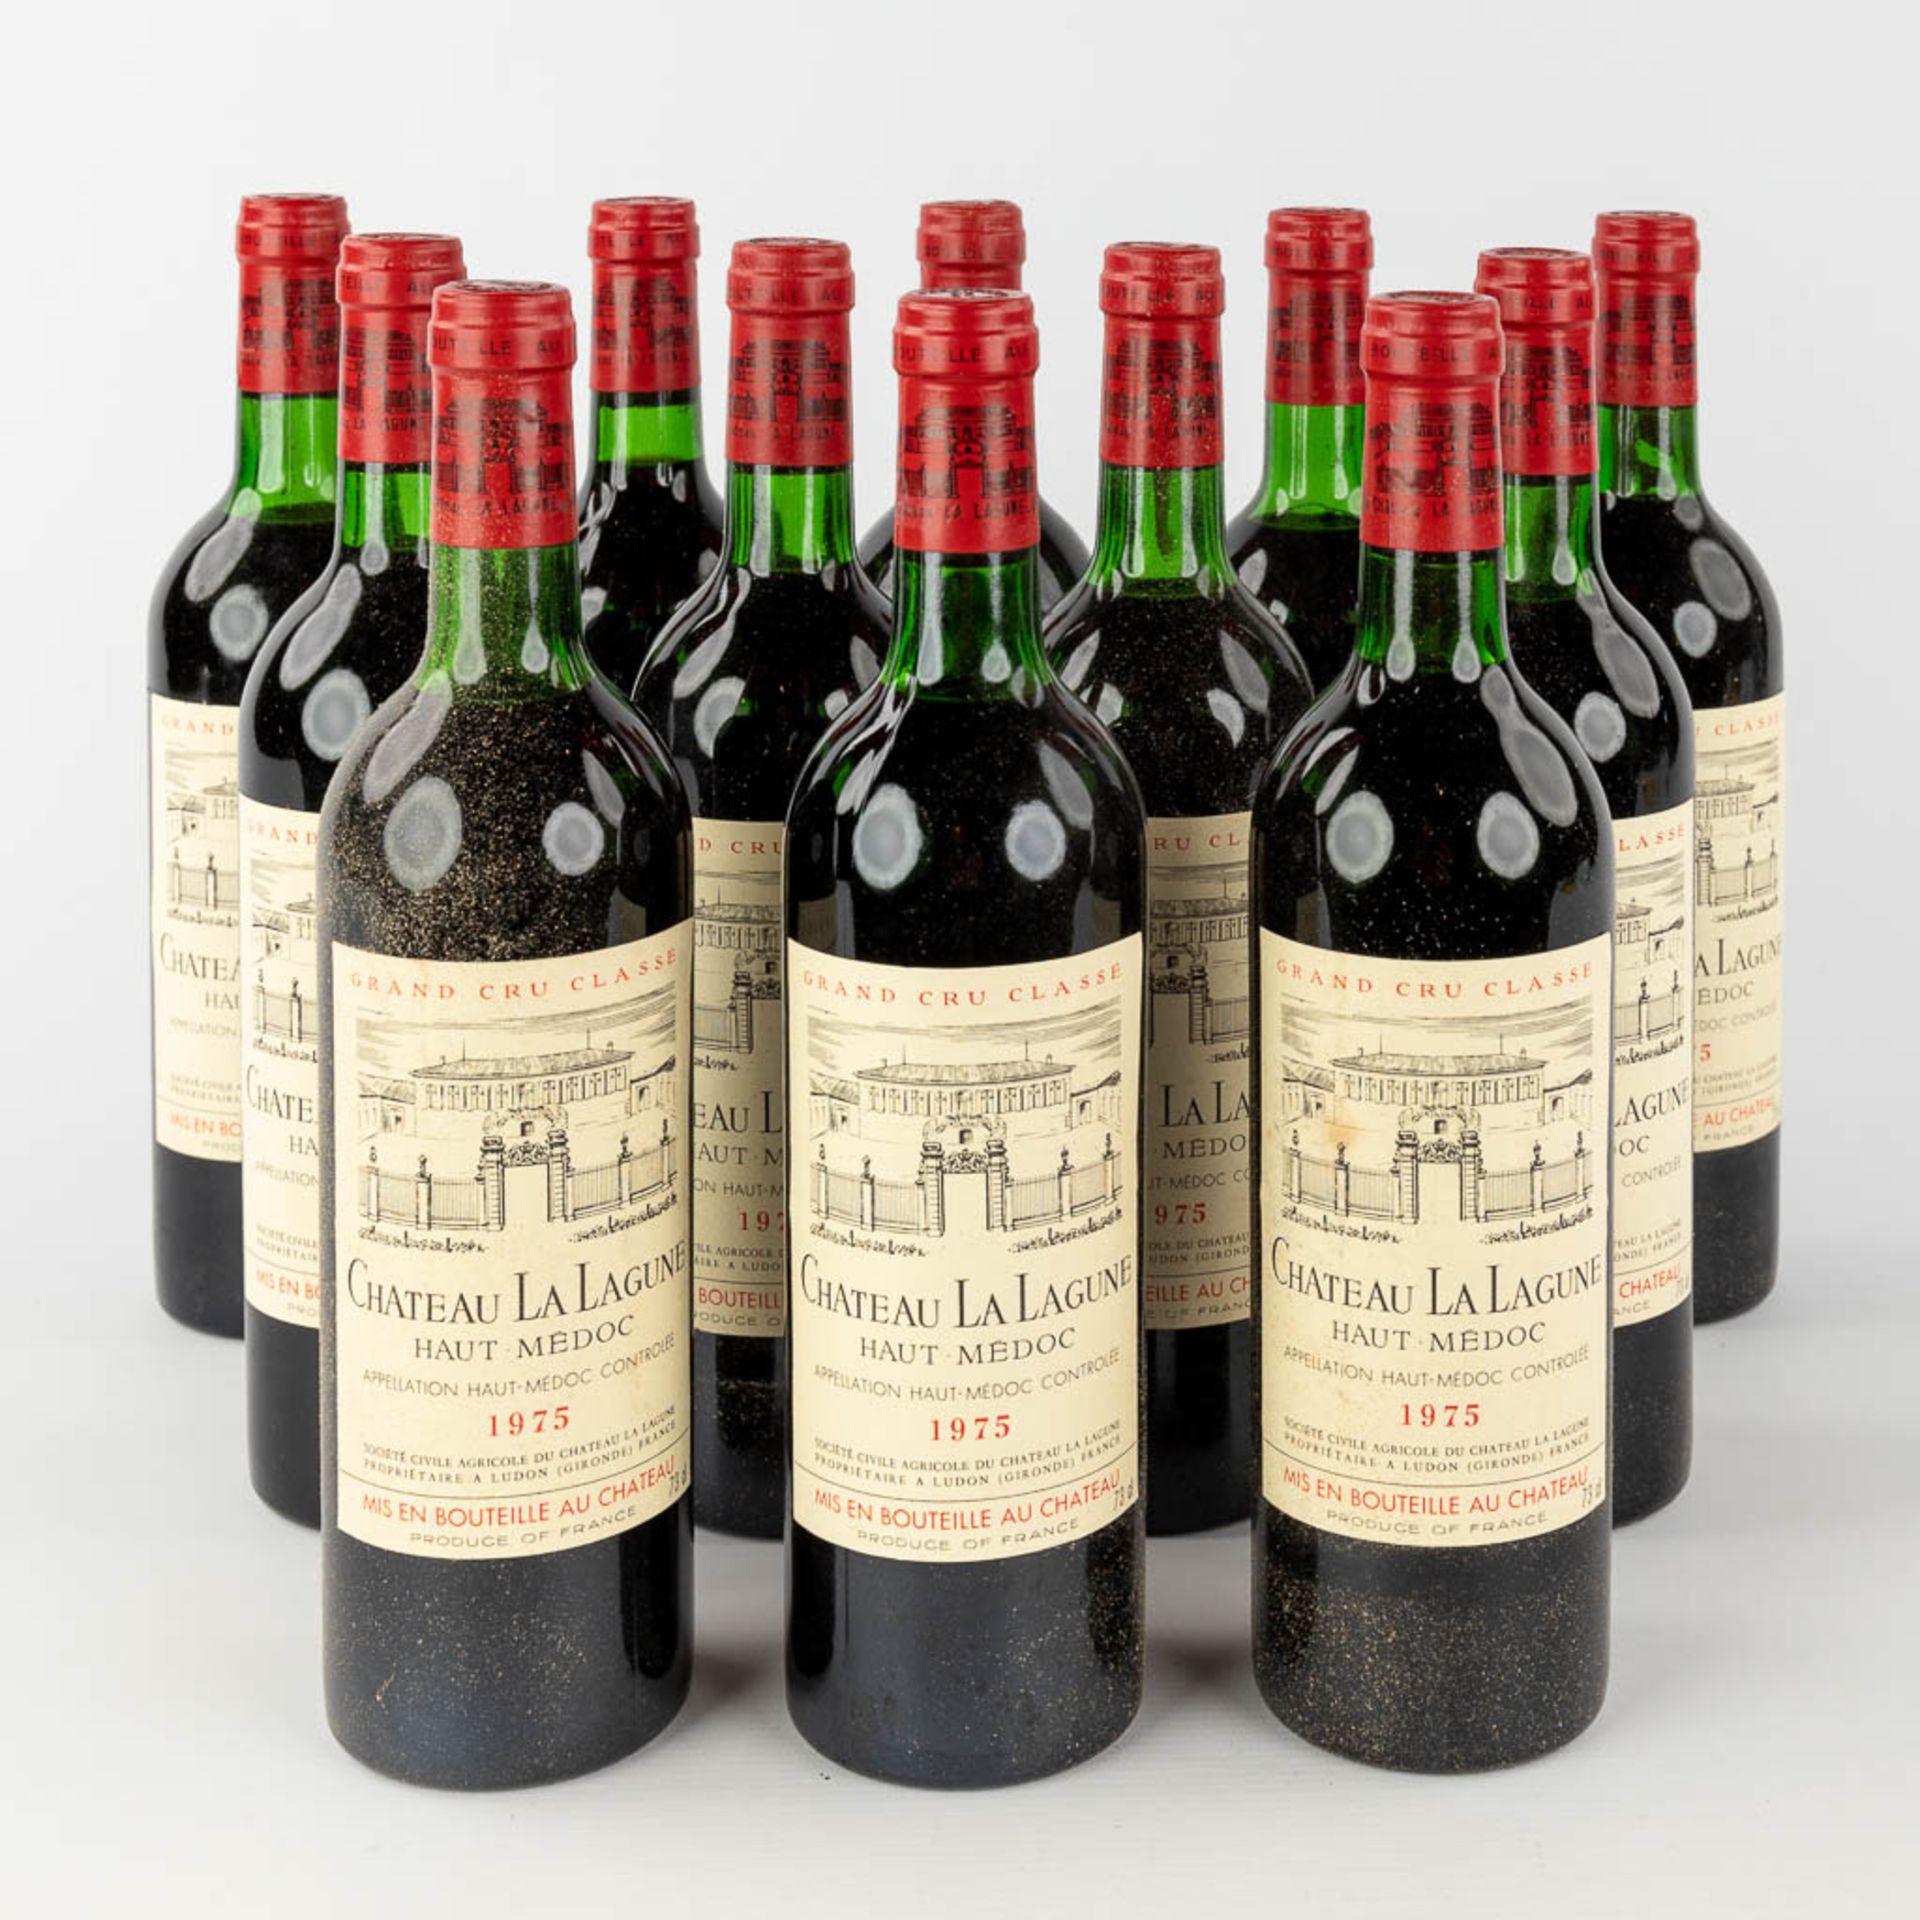 Château La Lagune Haut Médoc, 1975, 12 bottles.